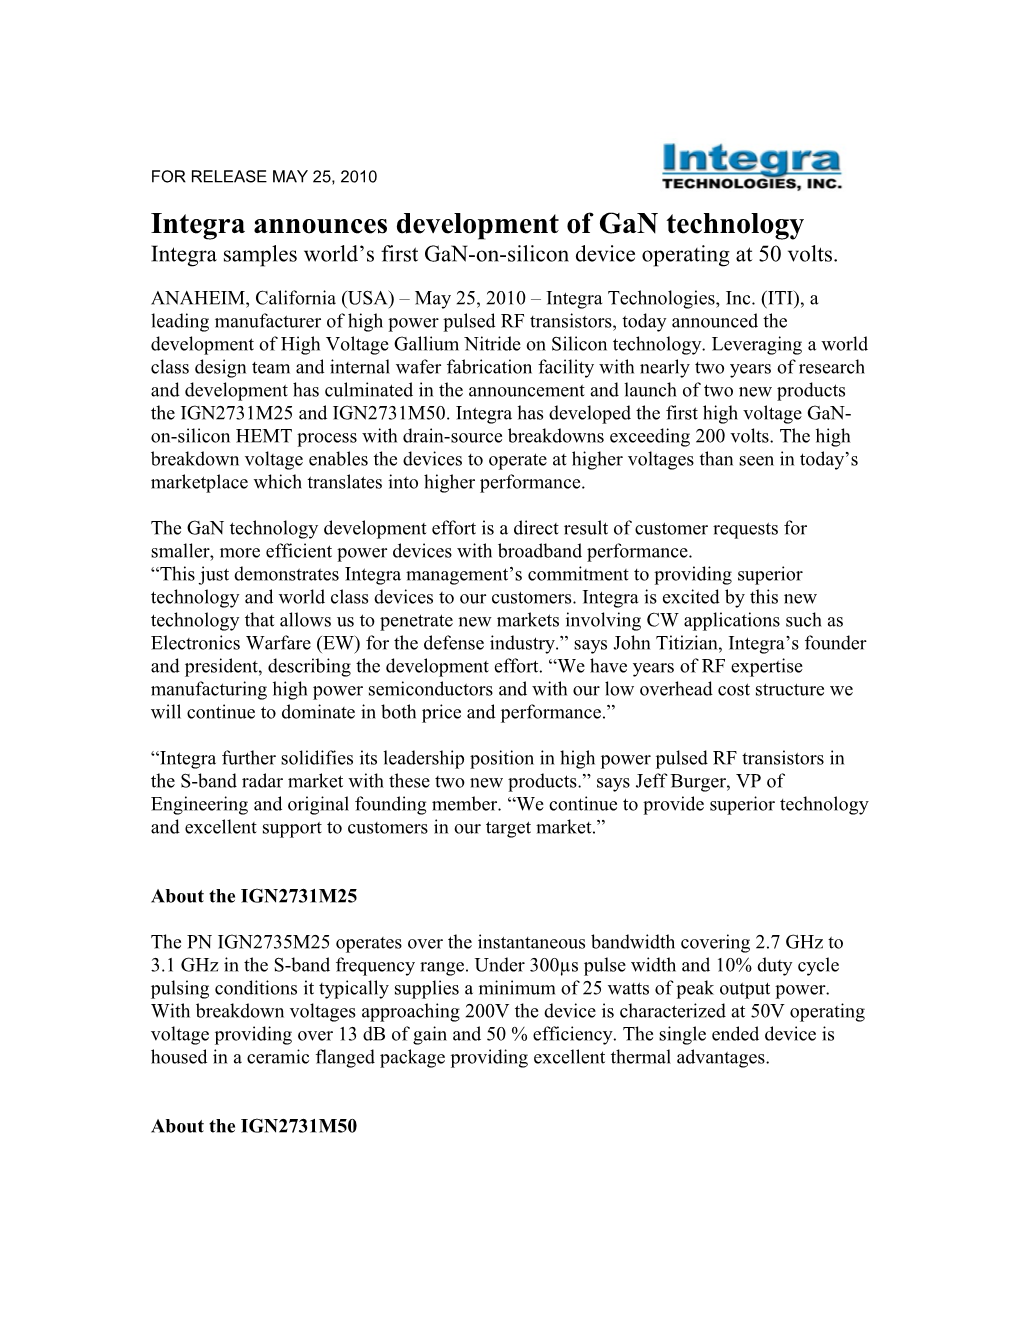 Integra Announcesdevelopment of Gan Technology